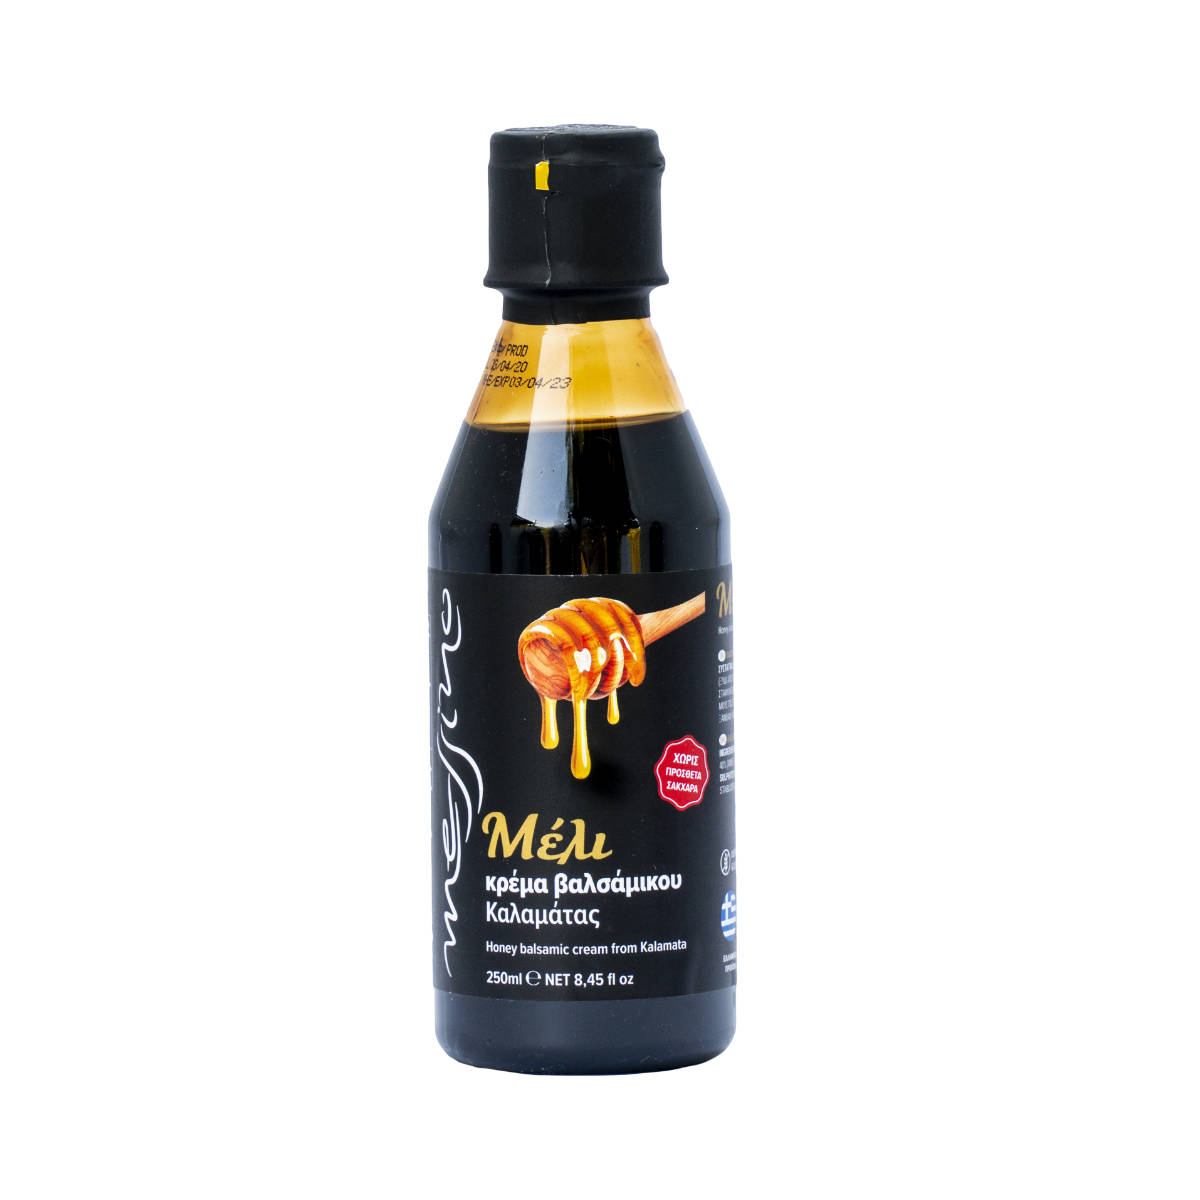 Κρέμα Βαλσάμικου με Μέλι 250ml